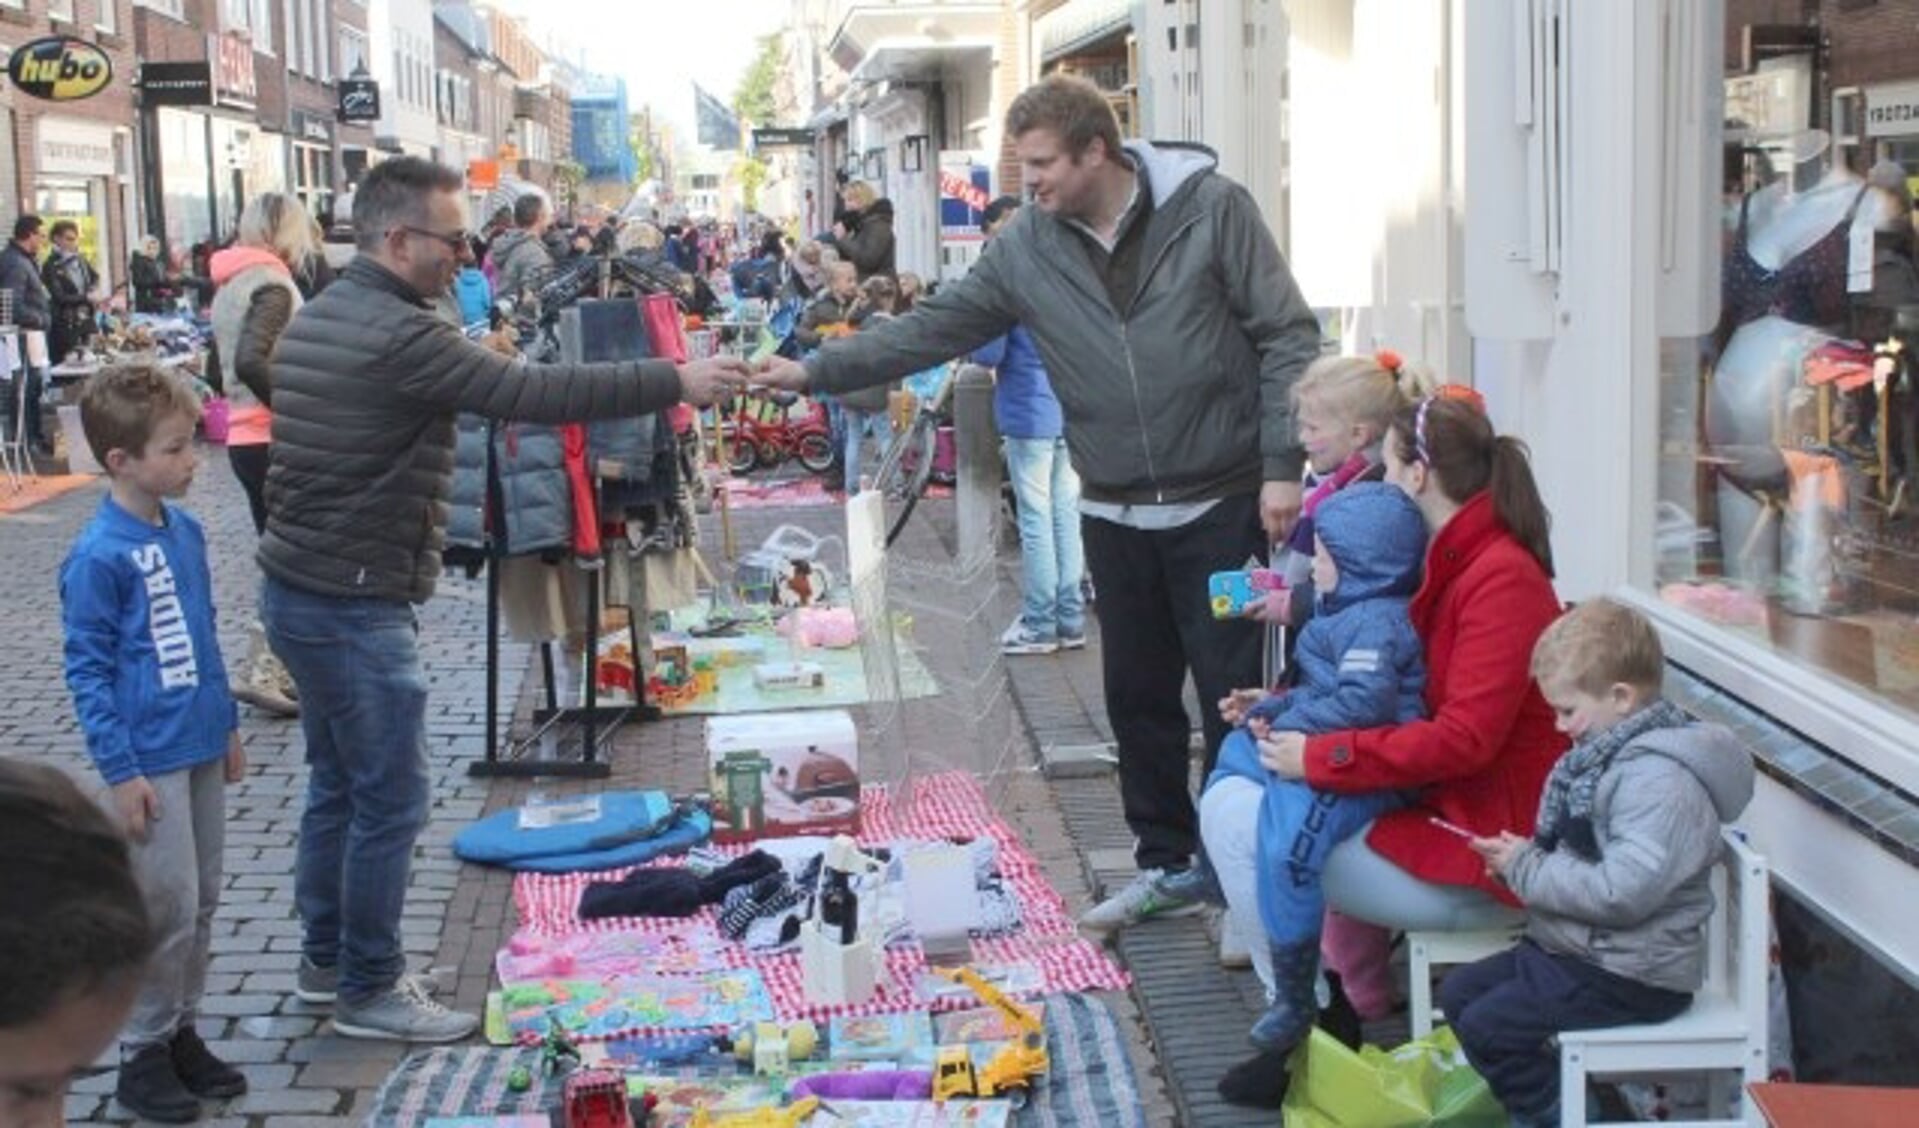 Dit jaar op Koningsdag nog meer ruimte voor de kinderbraderie in de straten van de binnenstad. (Archieffoto Lysette Verwegen)